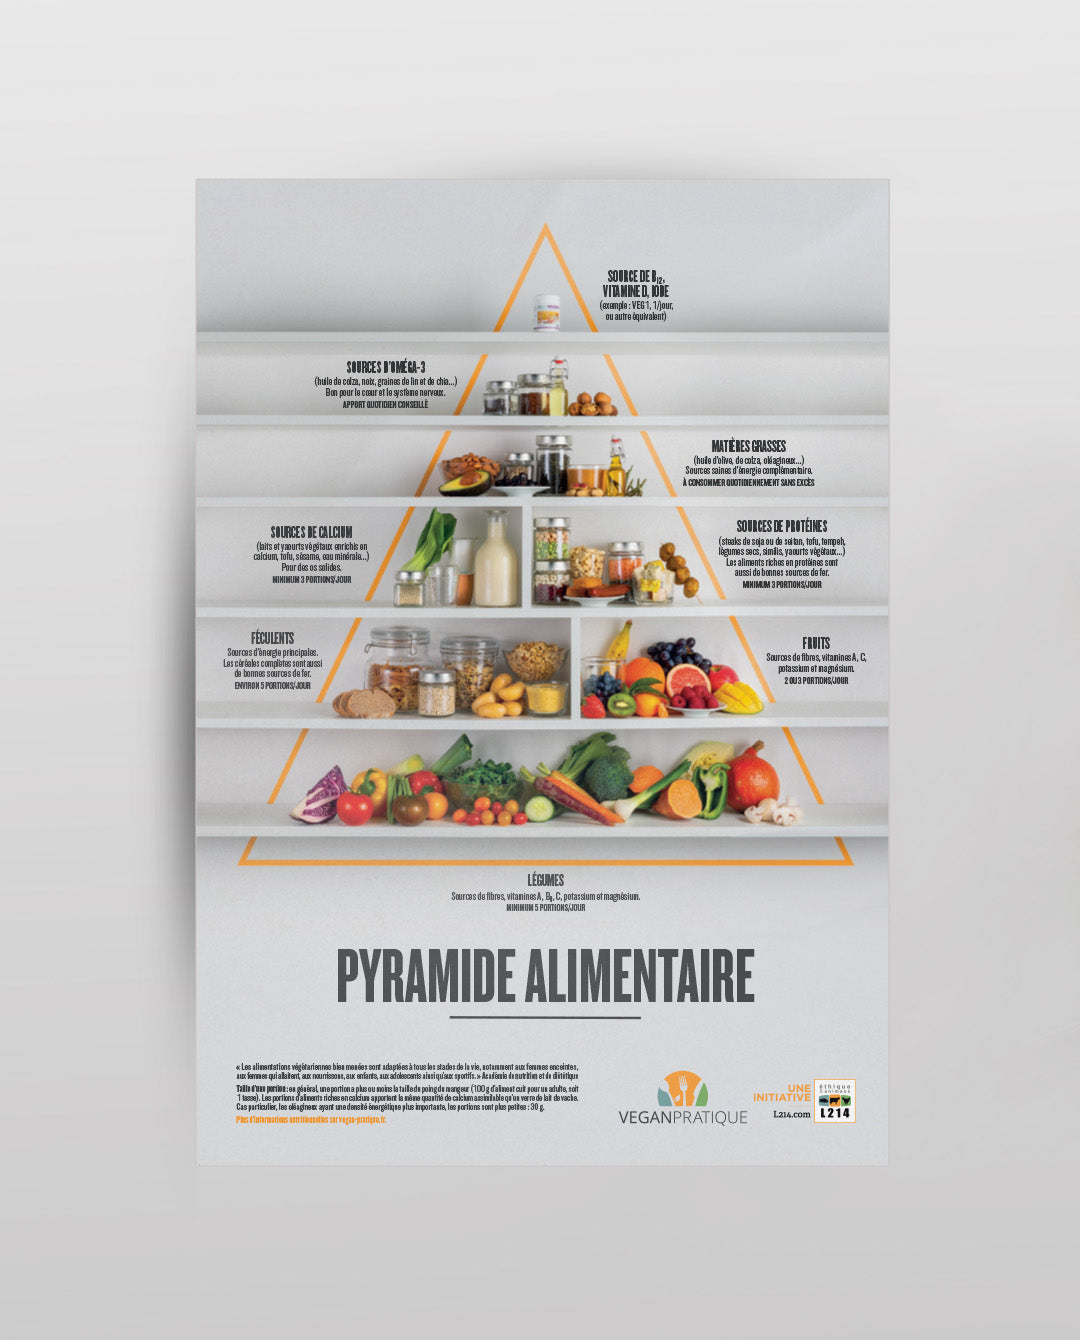 La Pyramide alimentaire